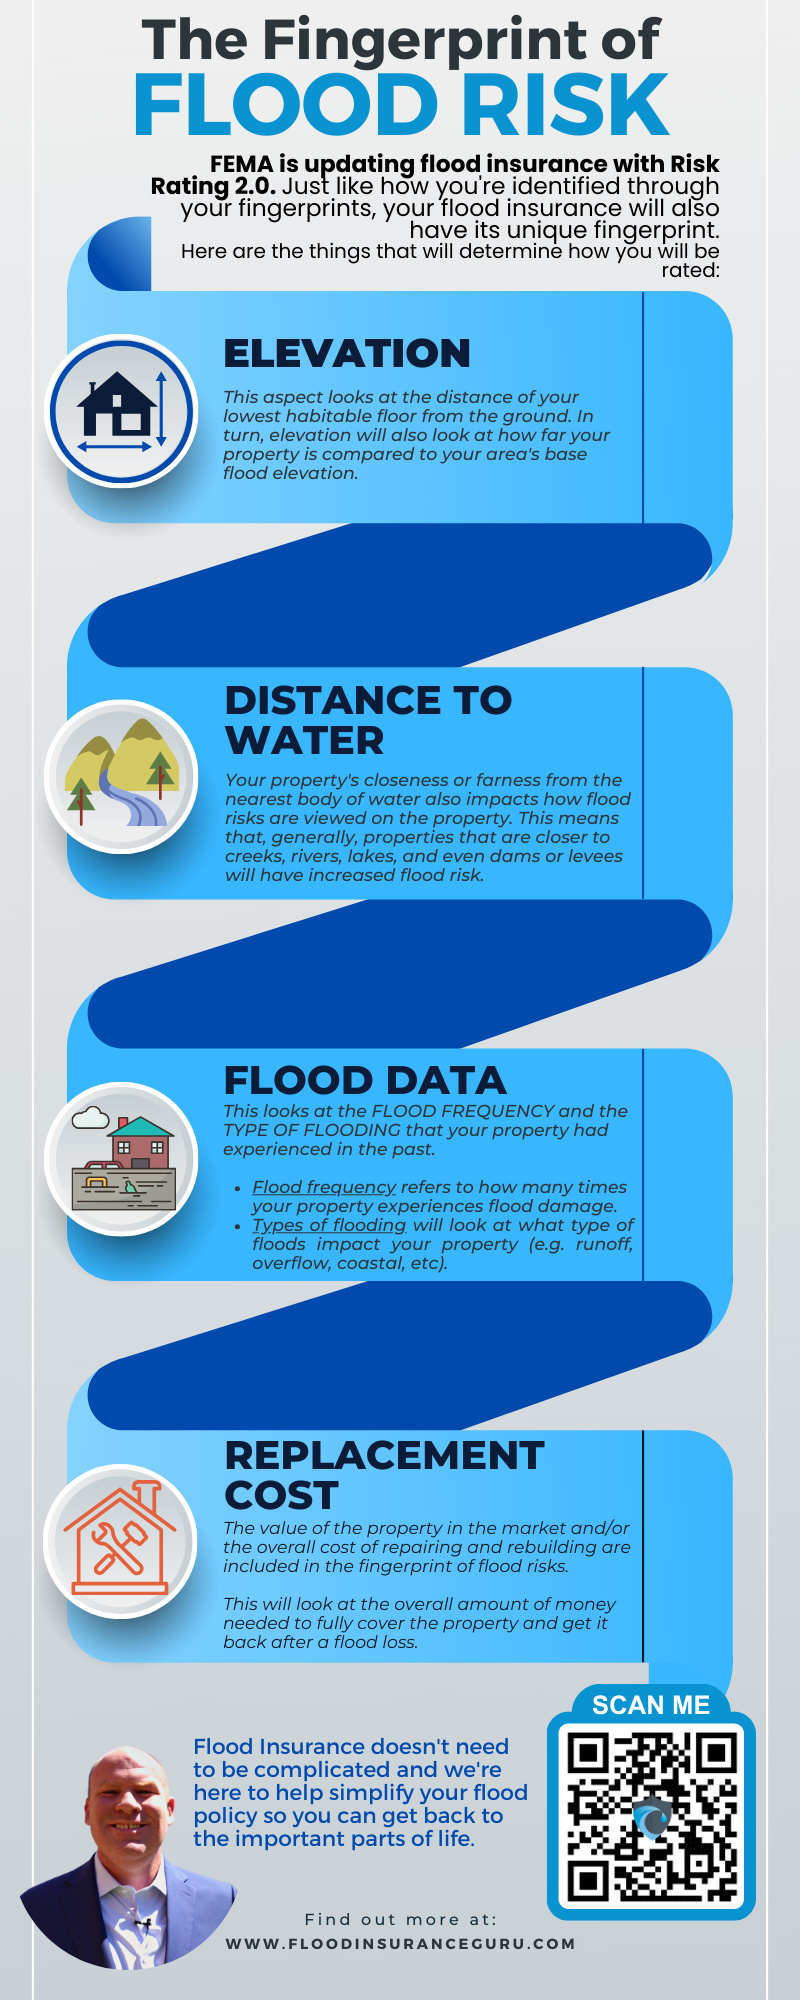 Fingerprint of Flood Risk